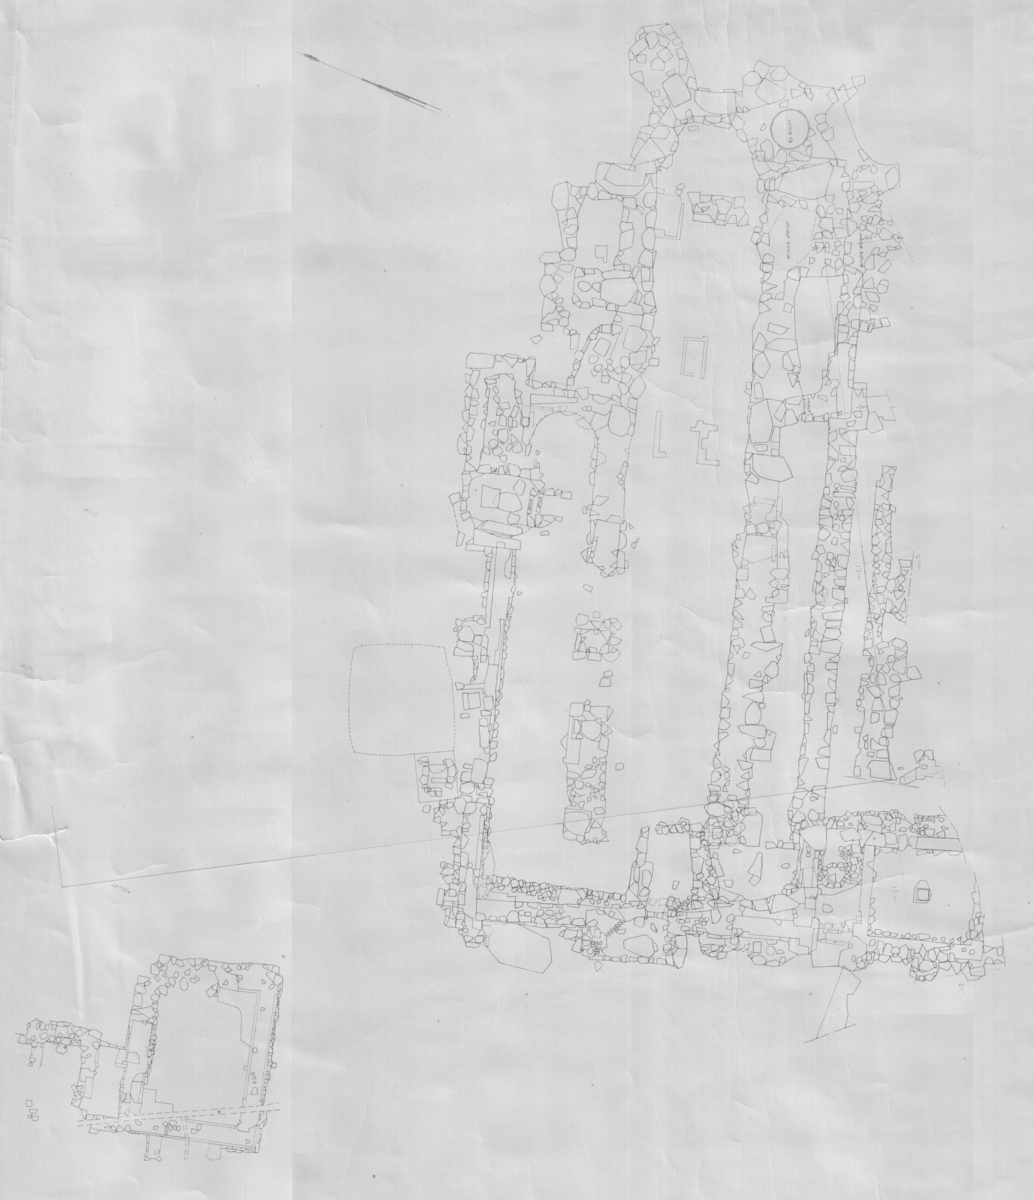 Kartor från inmätningar av Dominikanklosterruin under stadshuset. Karta.